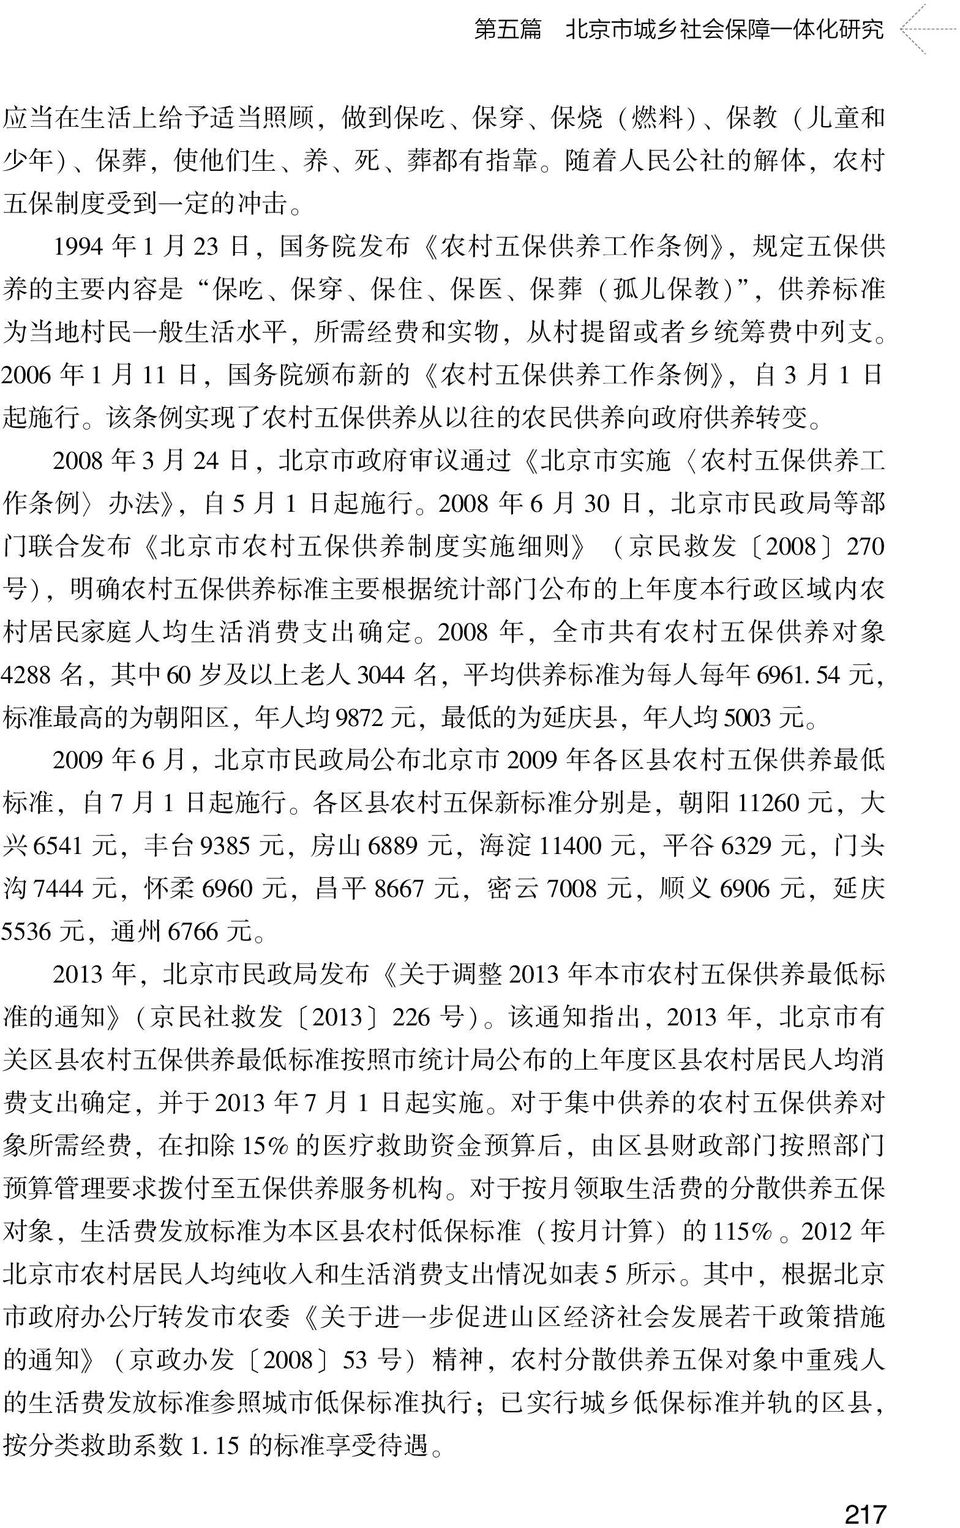 例, 自 3 月 1 日 起 施 行 该 条 例 实 现 了 农 村 五 保 供 养 从 以 往 的 农 民 供 养 向 政 府 供 养 转 变 2008 年 3 月 24 日, 北 京 市 政 府 审 议 通 过 北 京 市 实 施 农 村 五 保 供 养 工 作 条 例 办 法, 自 5 月 1 日 起 施 行 2008 年 6 月 30 日, 北 京 市 民 政 局 等 部 门 联 合 发